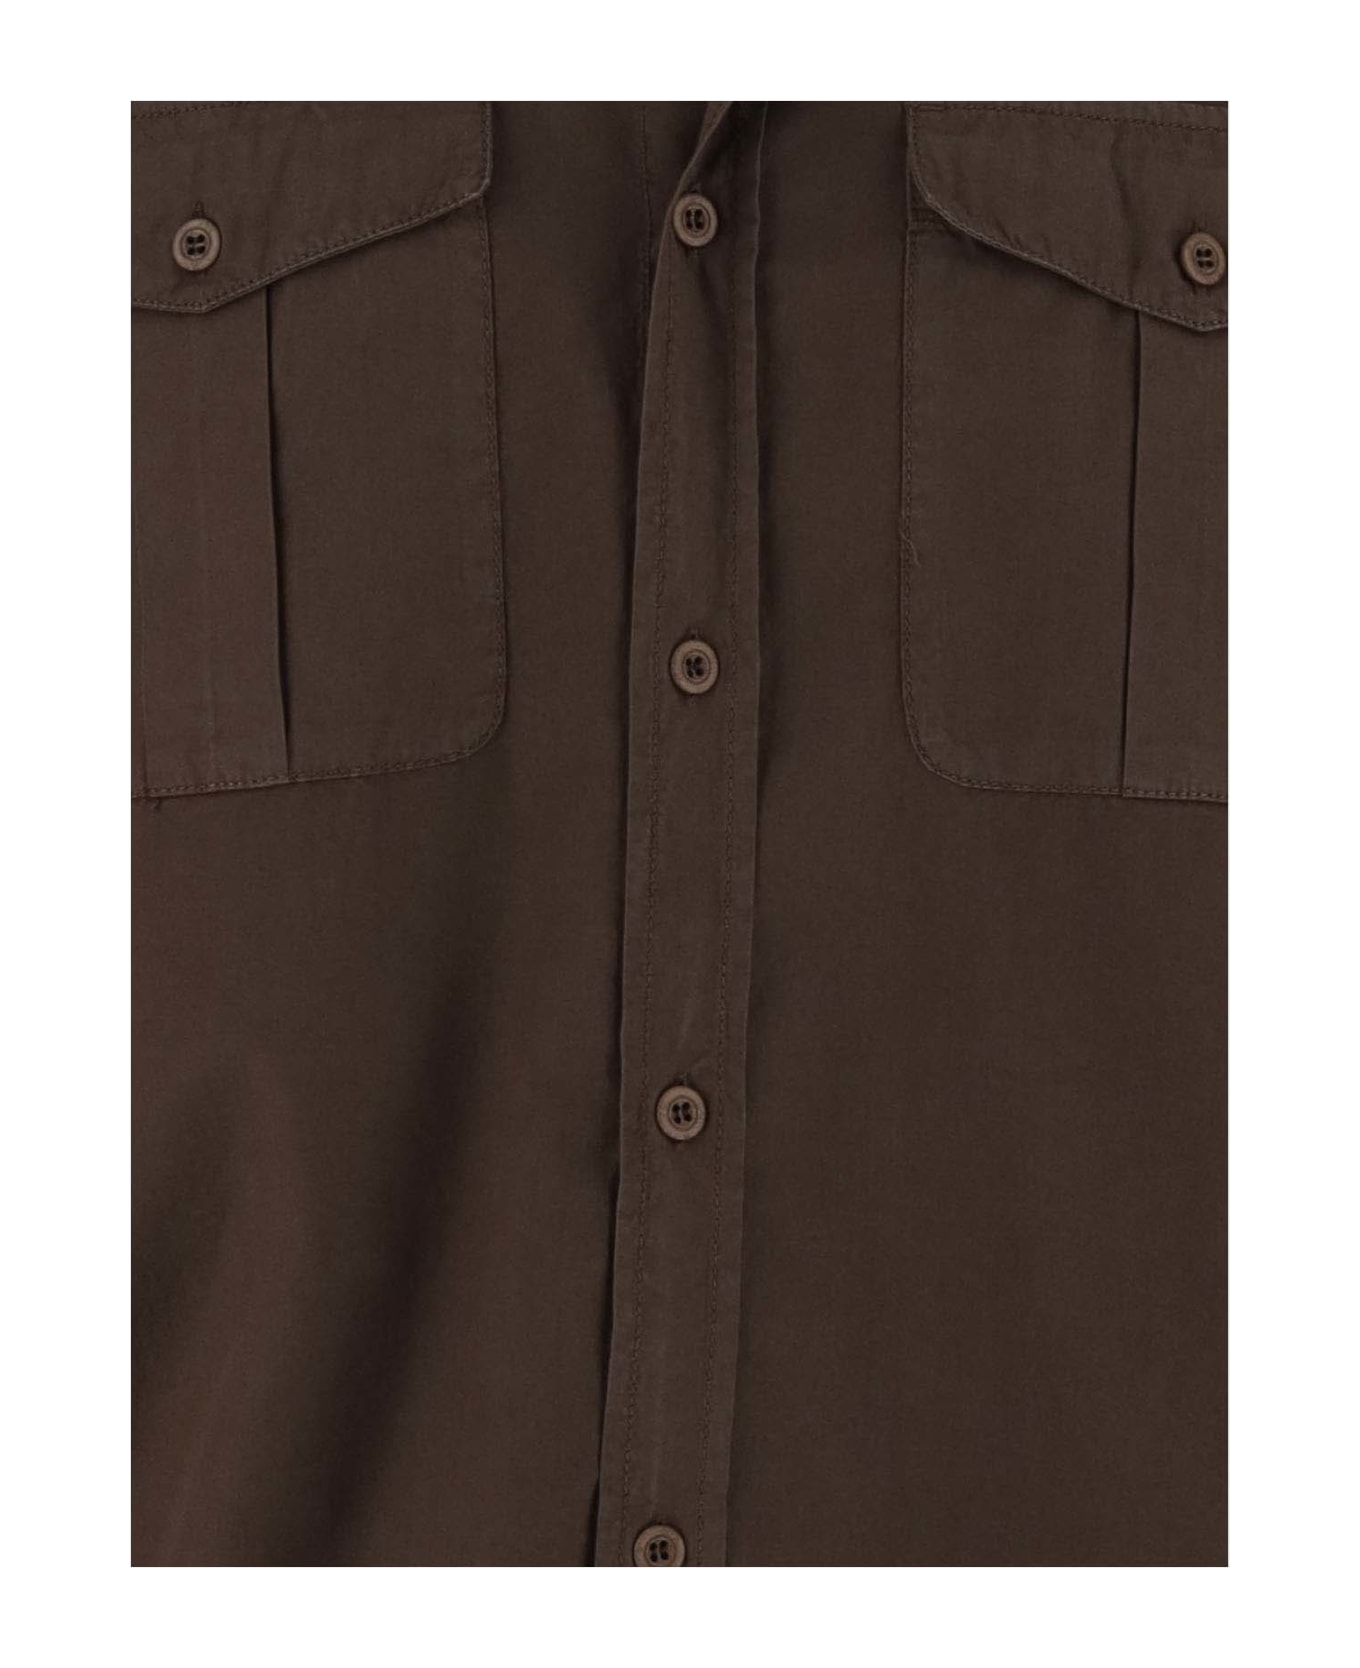 Emporio Armani Cotton Shirt - Brown